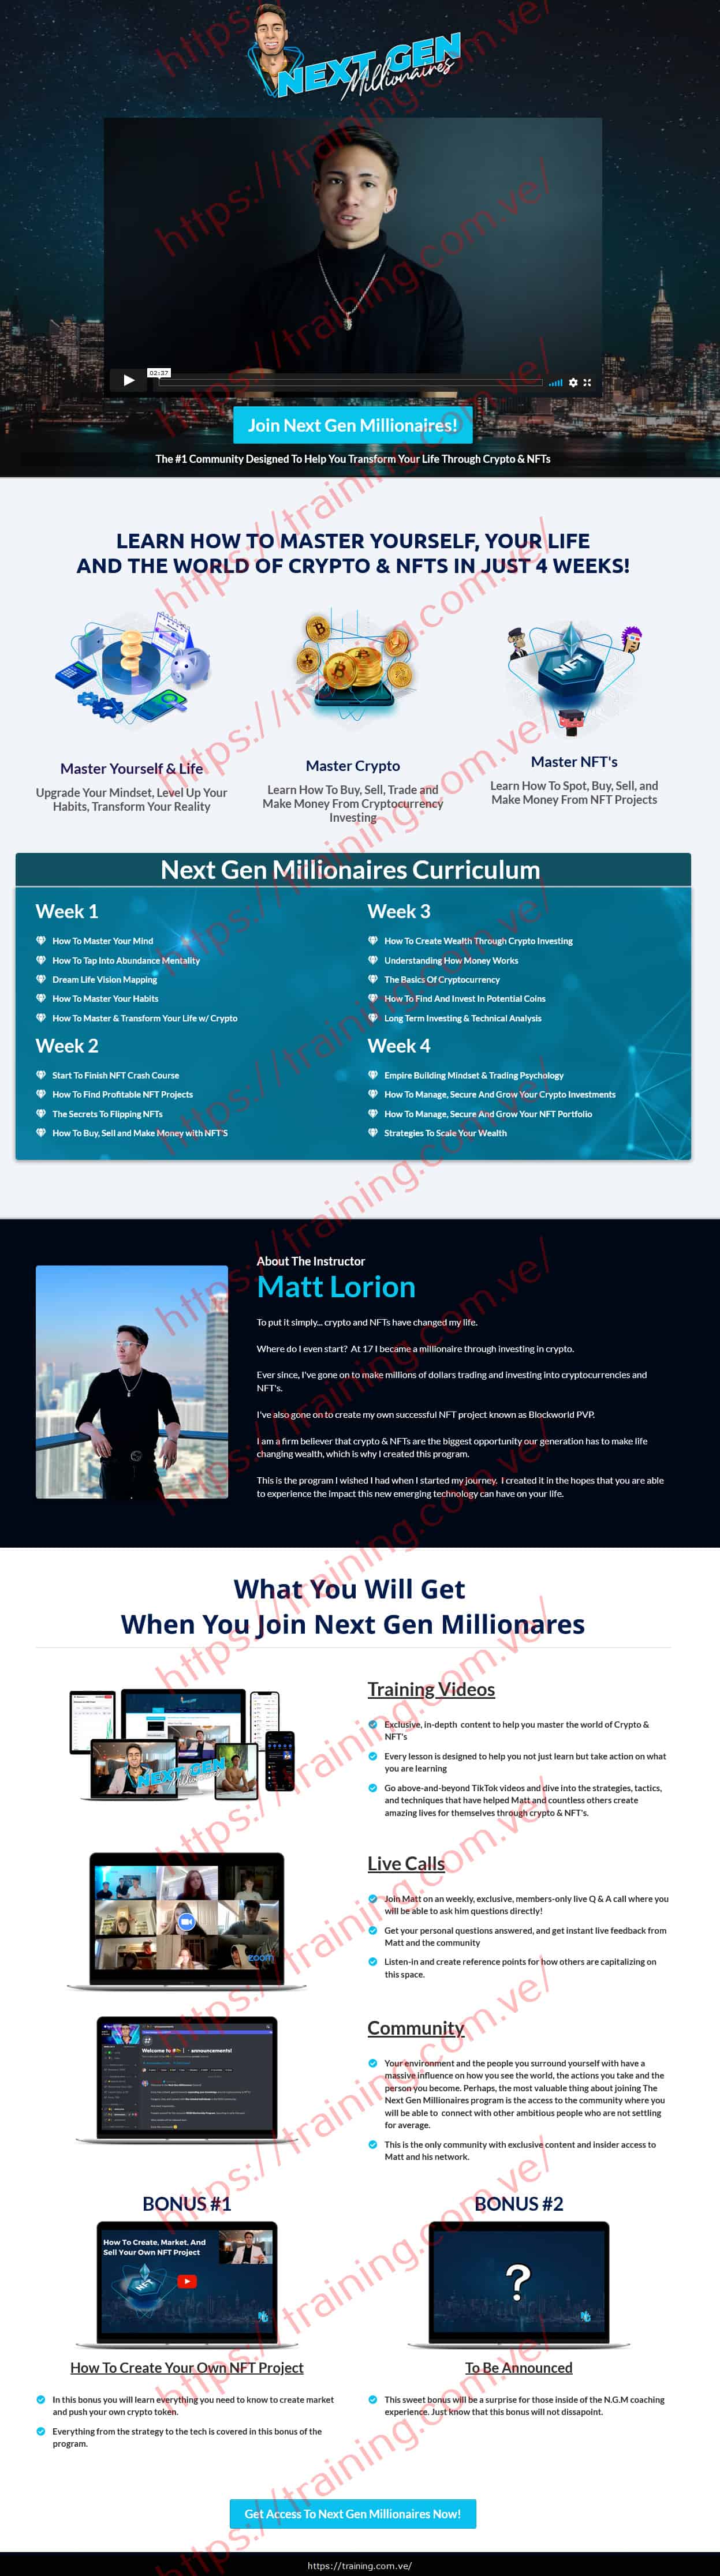 Next Gen Millionaires by Matt Lorion Sales Page